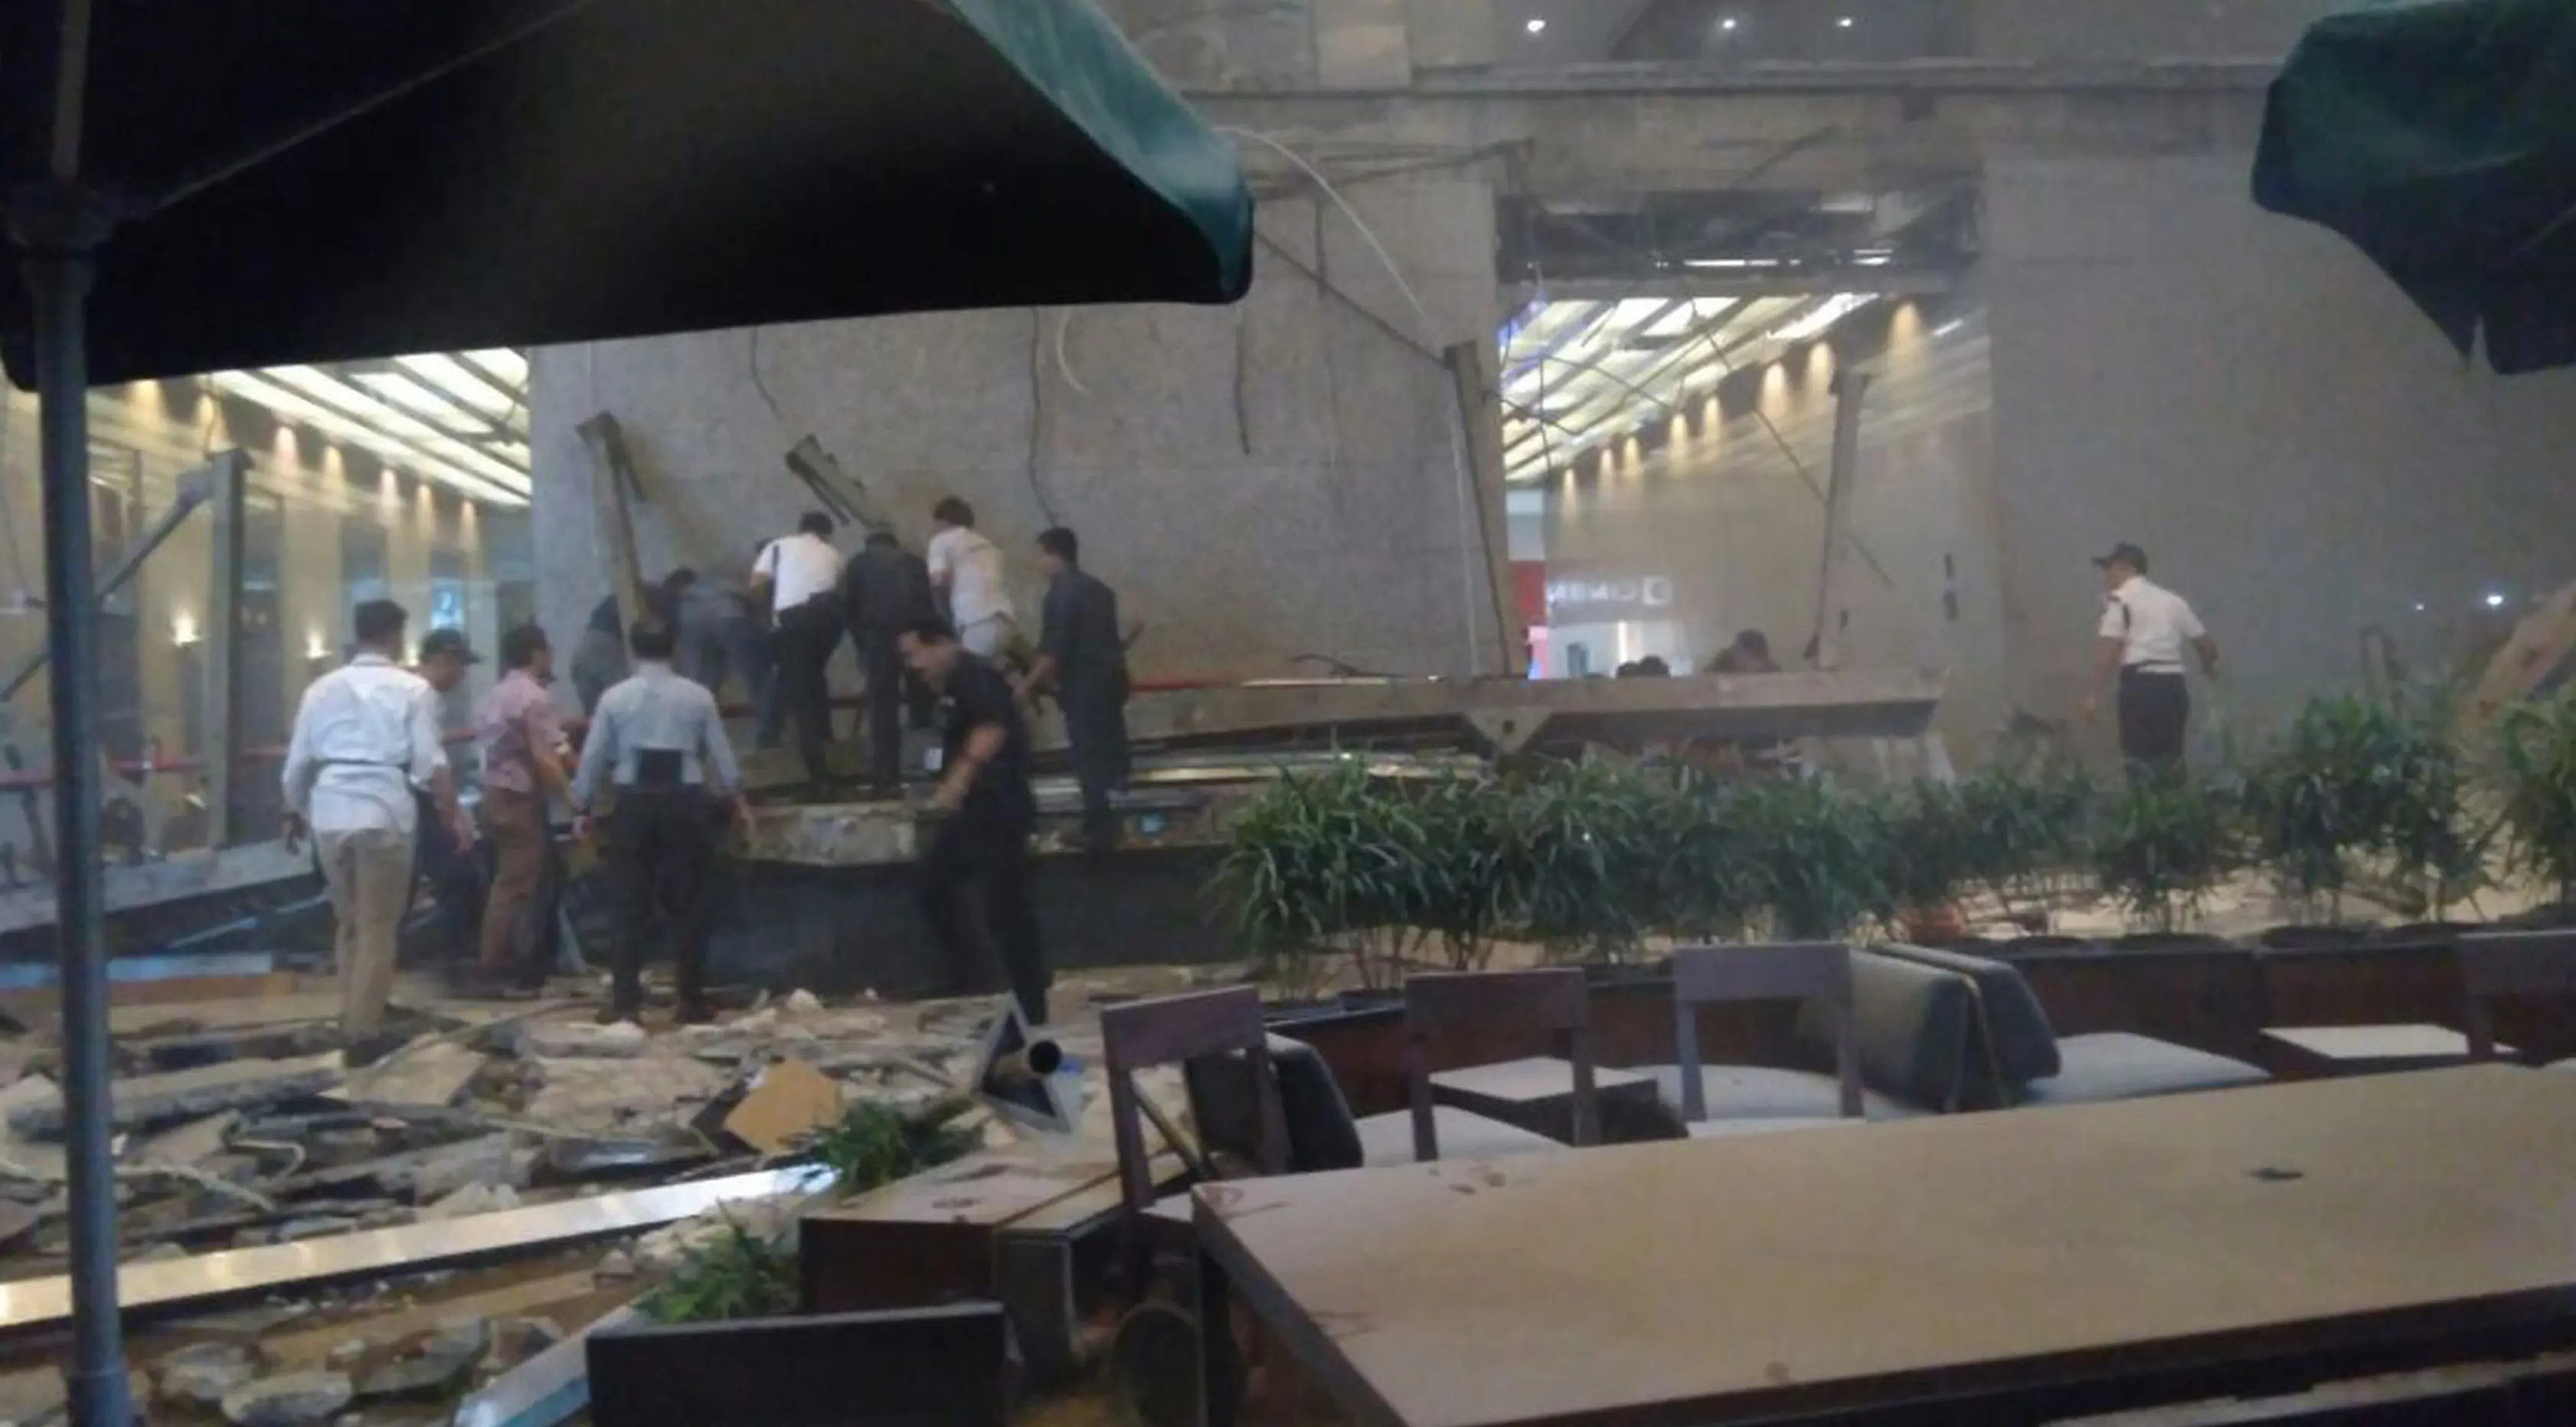 Sejumlah orang mengevakuasi korban dari robohnya balkon lantai 1 tower II Bursa Efek Indonesia (BEI) roboh, Jakarta, Senin (15/1). Insiden itu menyebabkan kerusakan di bagian gedung kawasan Bisnis Sudirman tersebut. (/istimewa)